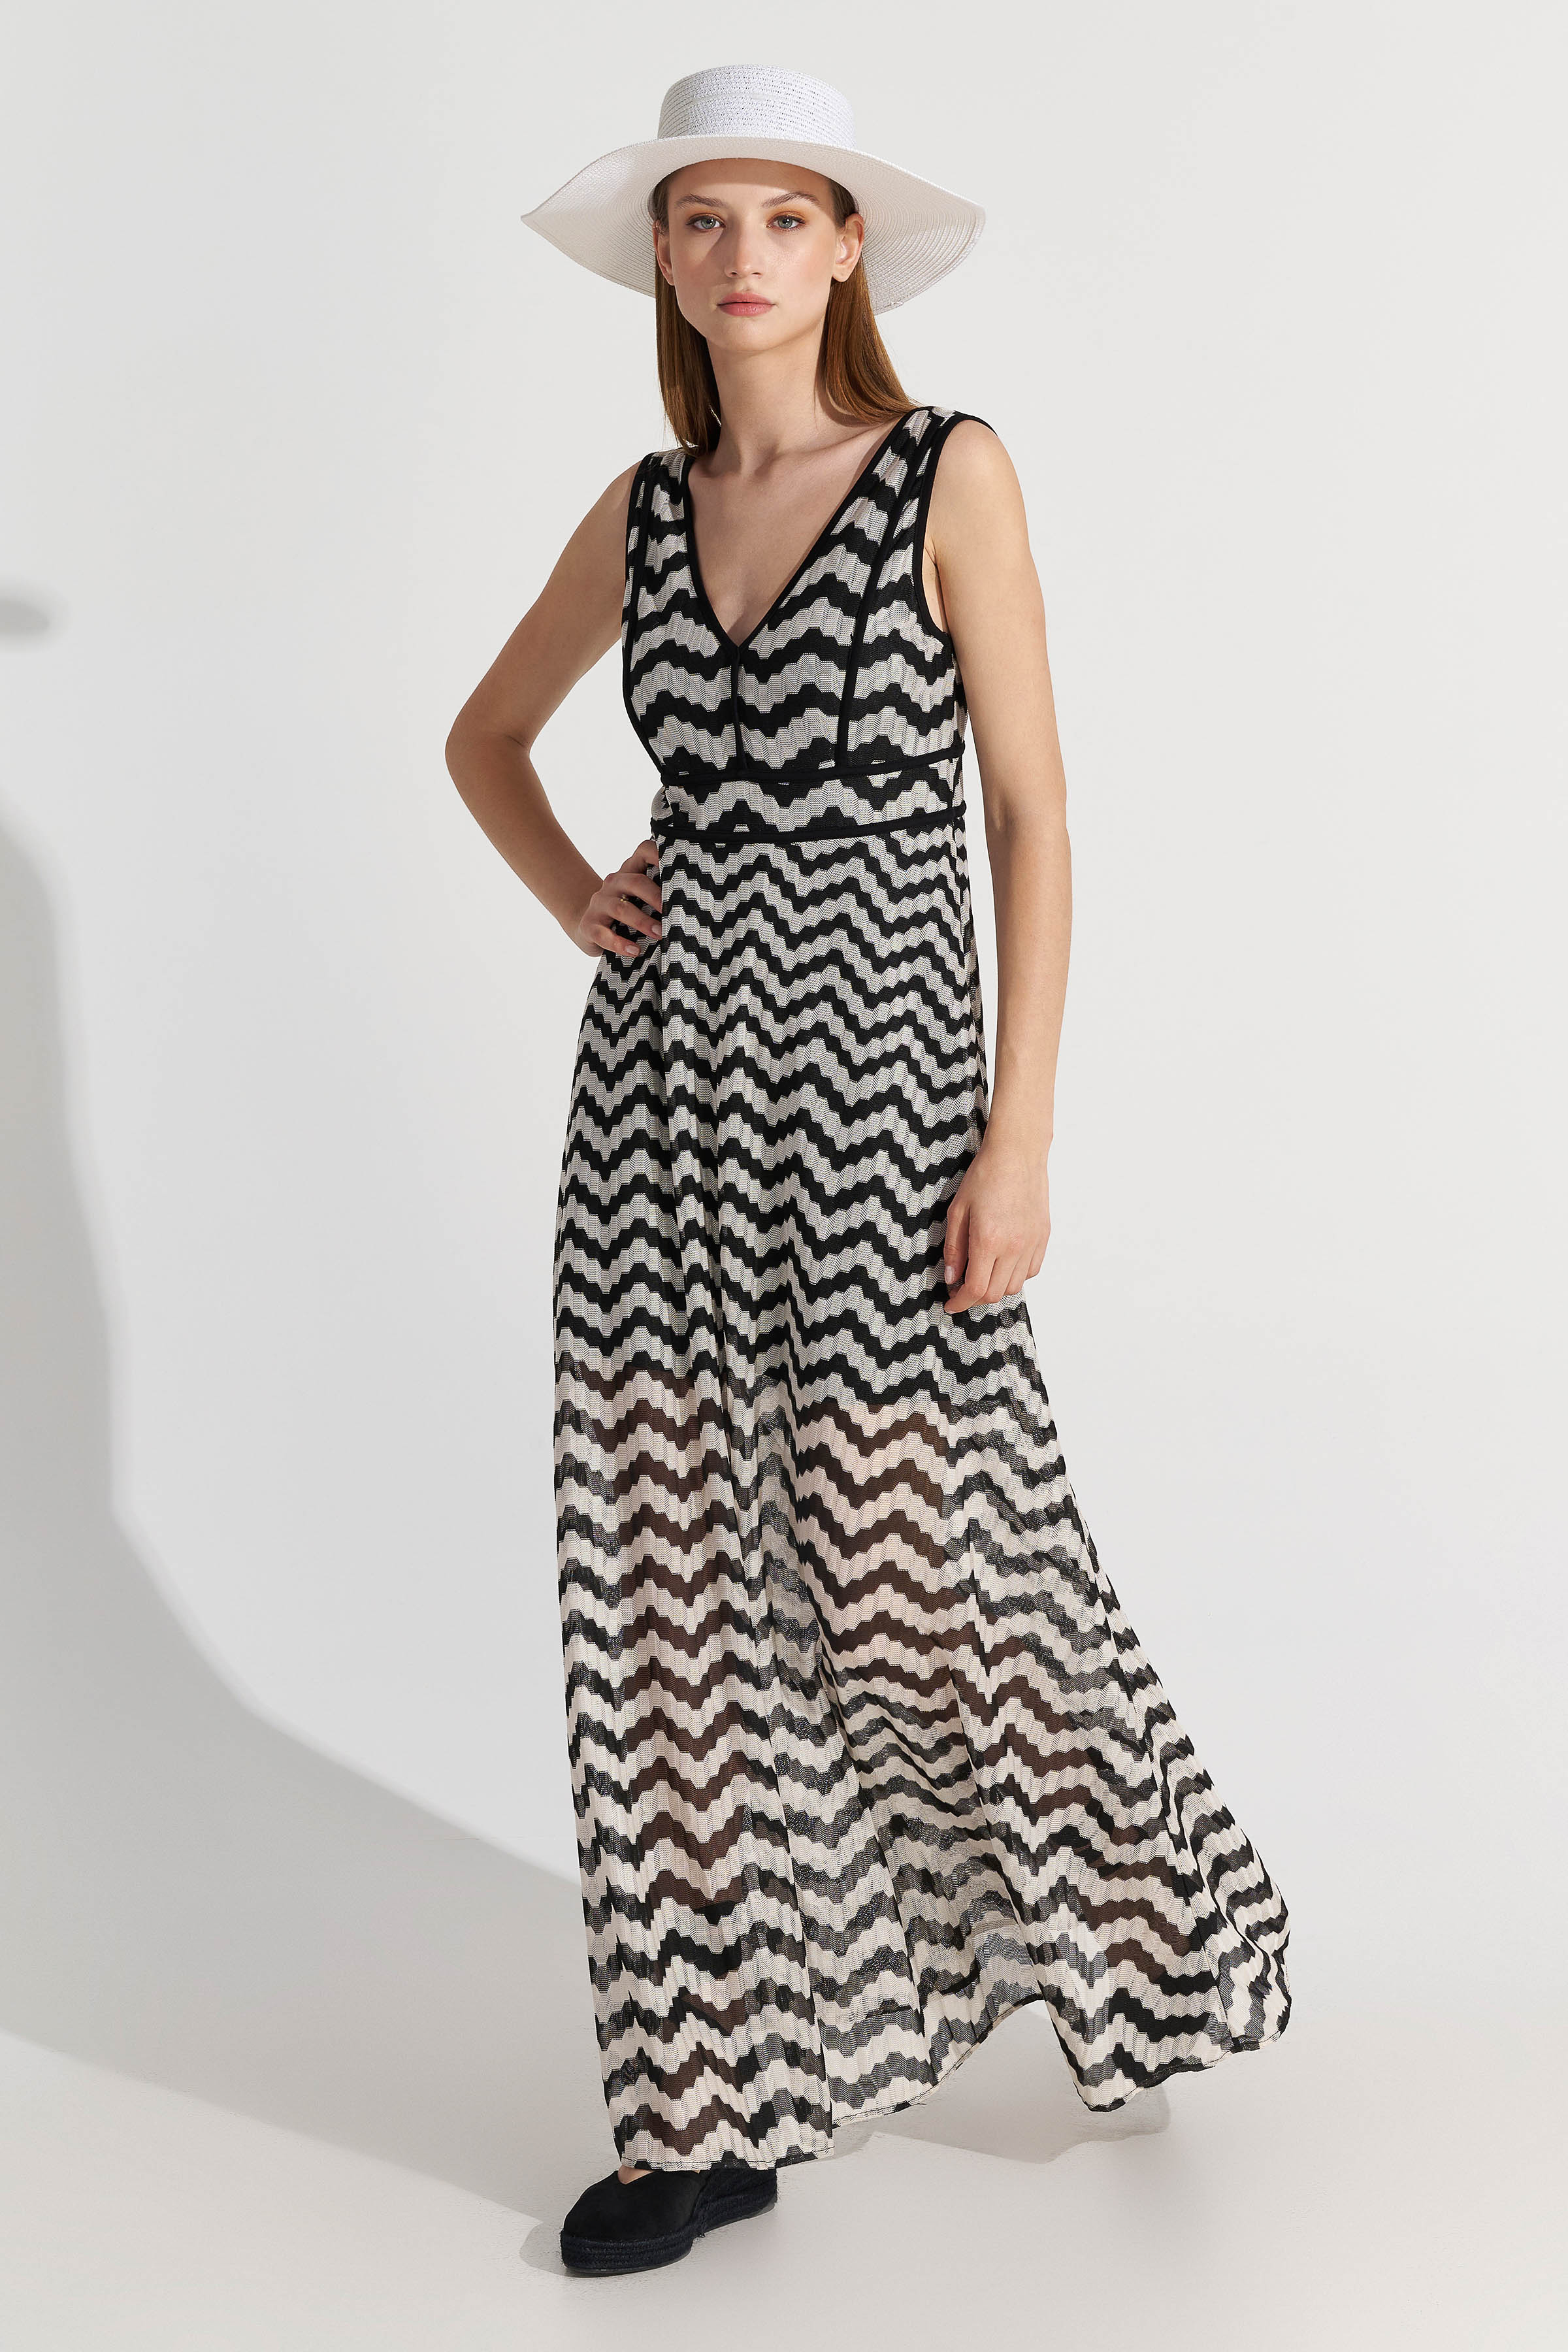 Φόρεμα μακρύ με zig-zag prints - 5207251916646